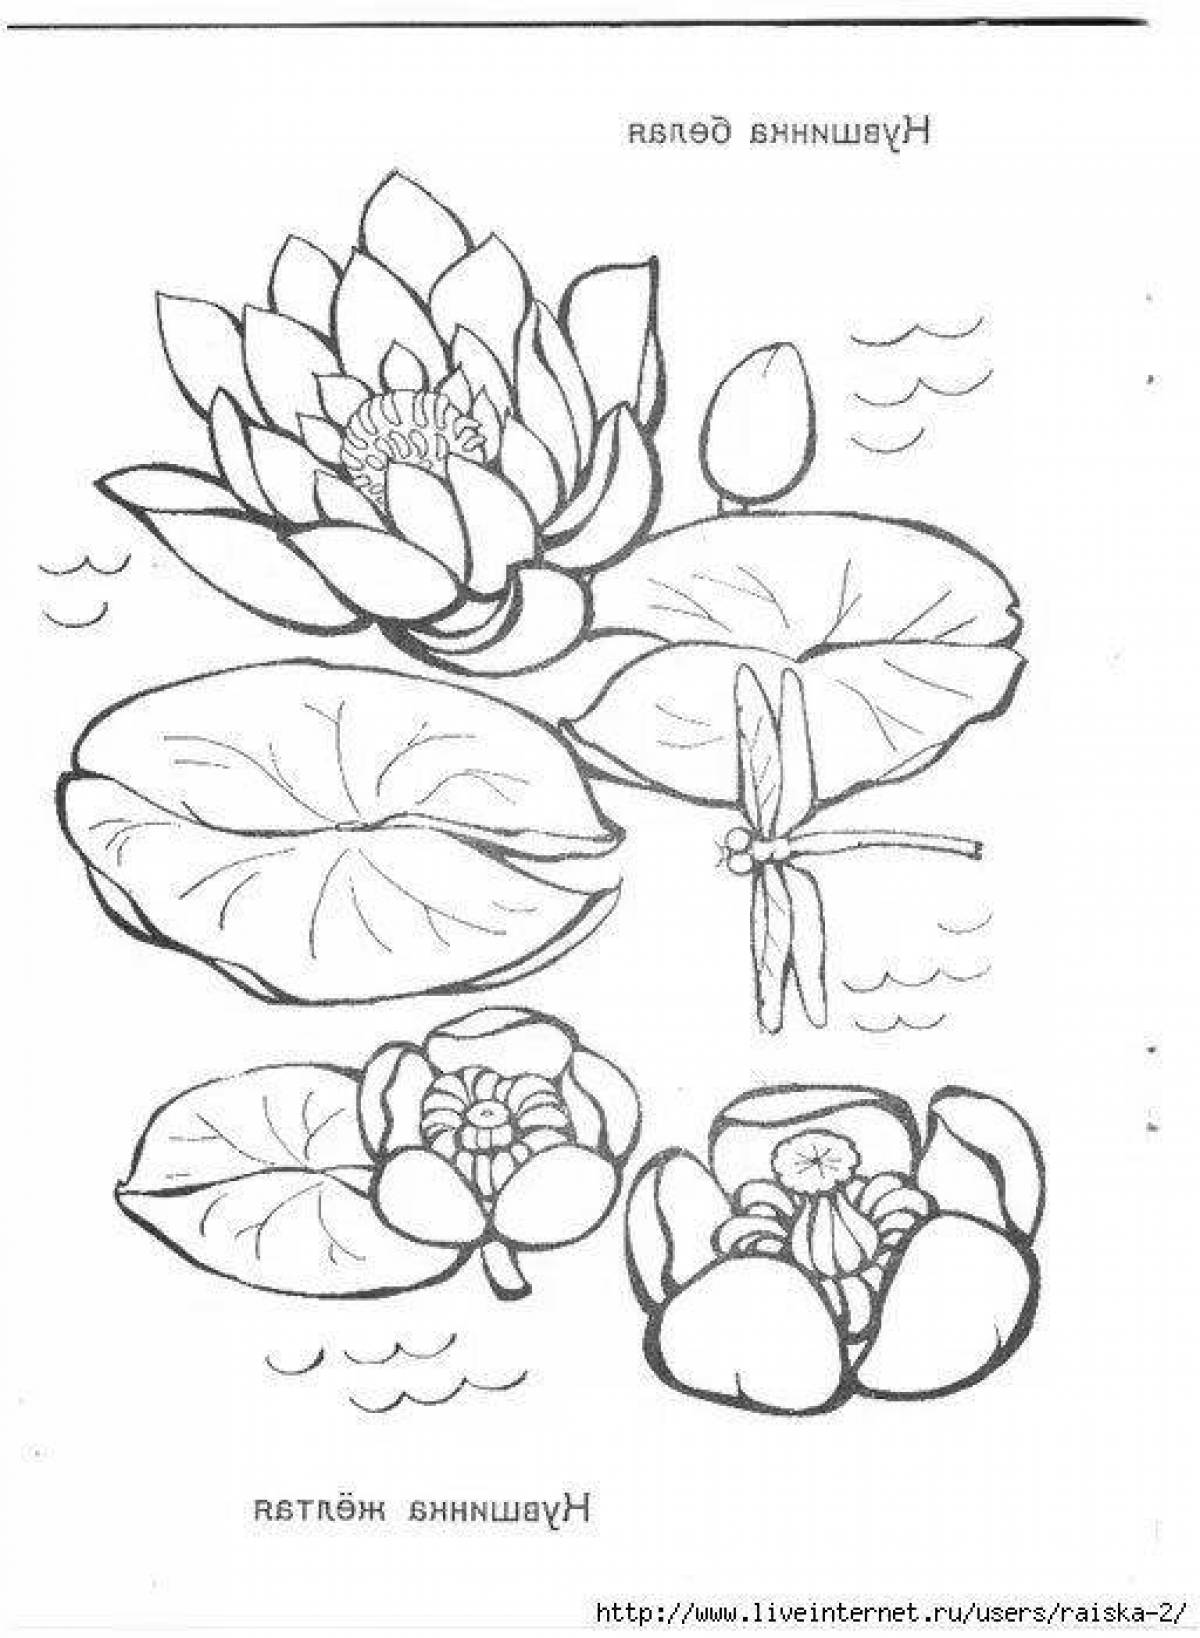 Простые рисунки растений и животных